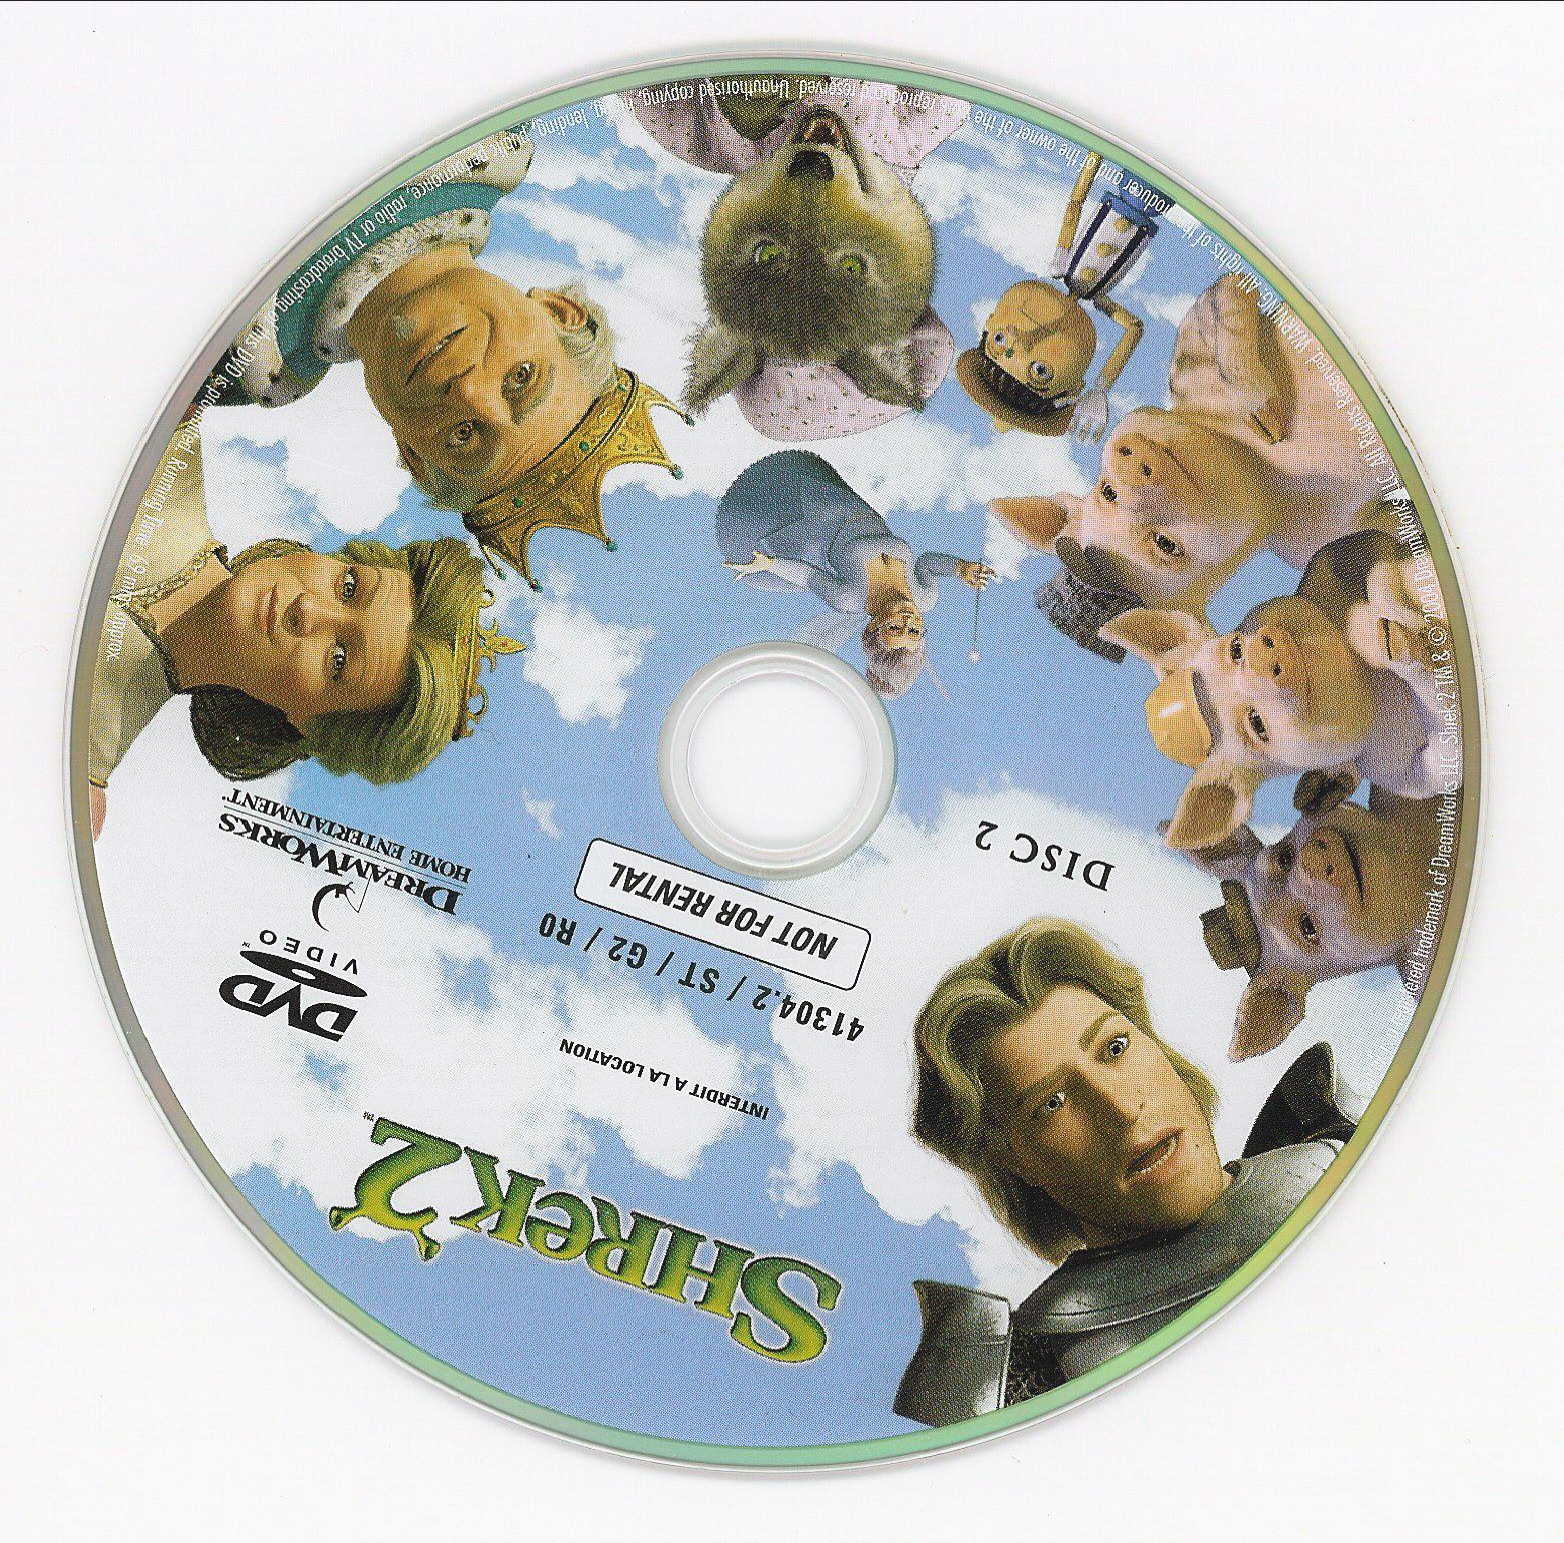 Shrek 2 disk 2